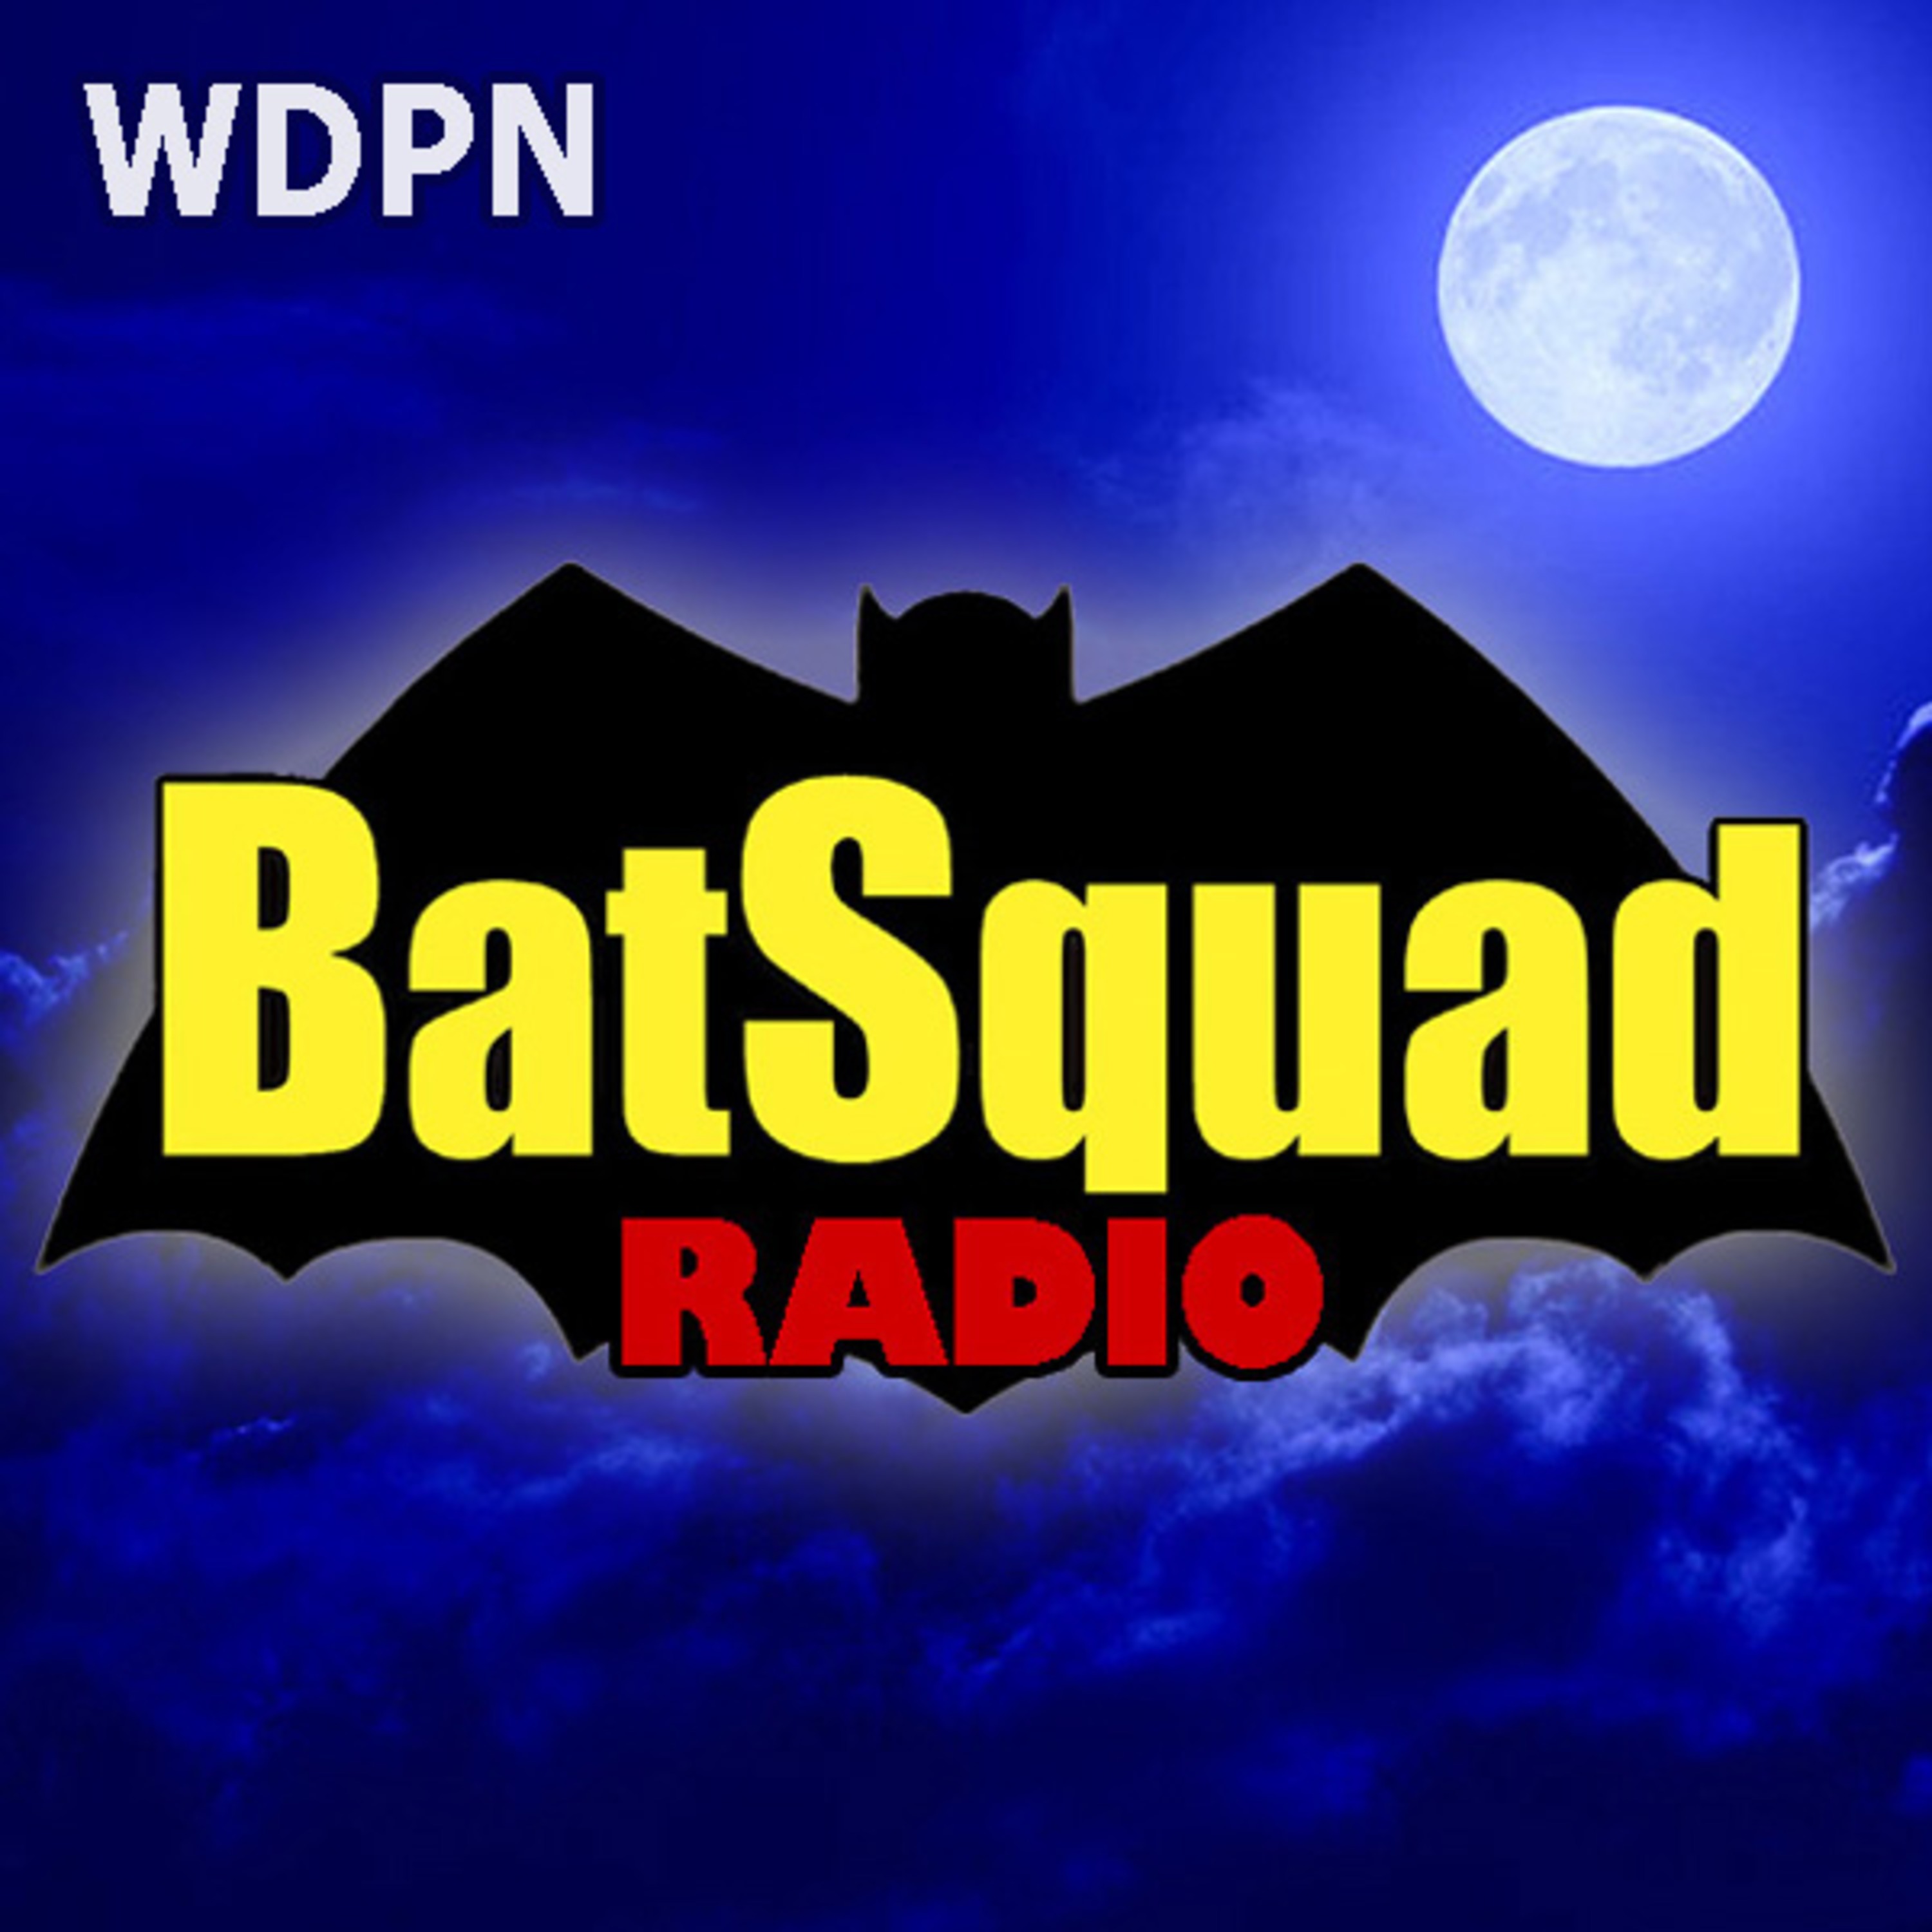 BatSquad Radio (WDPN)